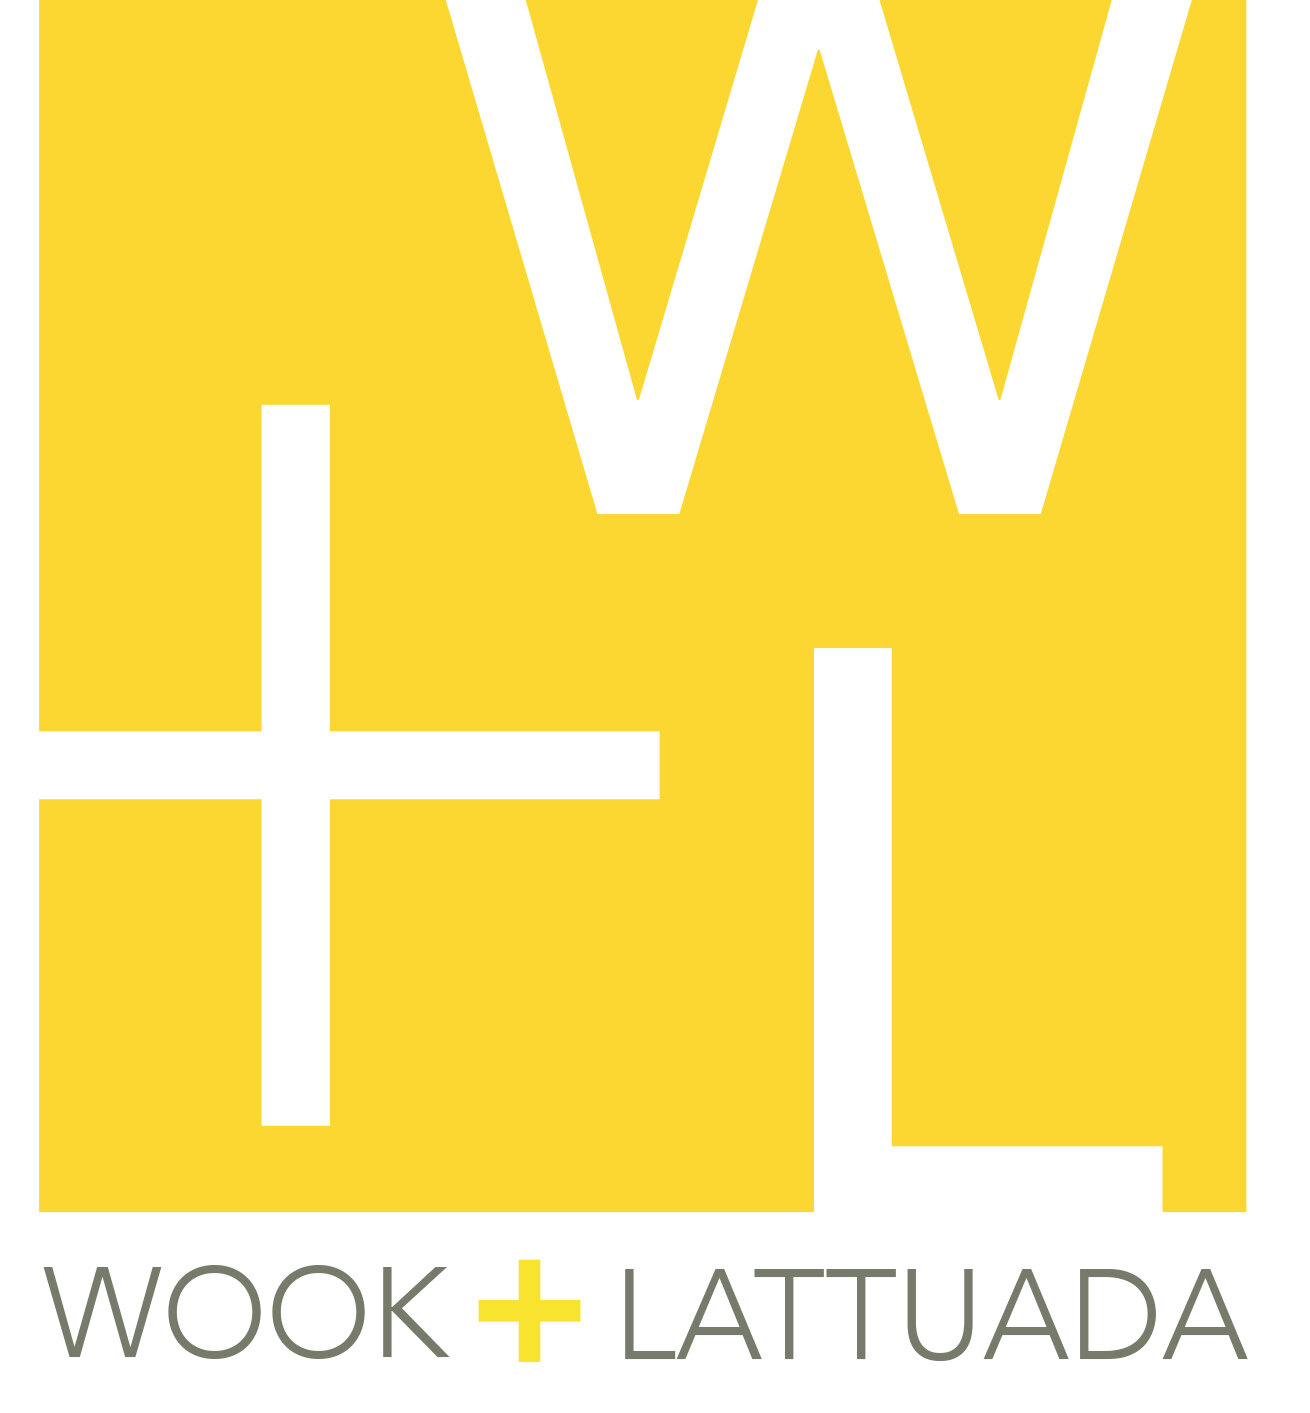 Wook+Lattuada Gallery